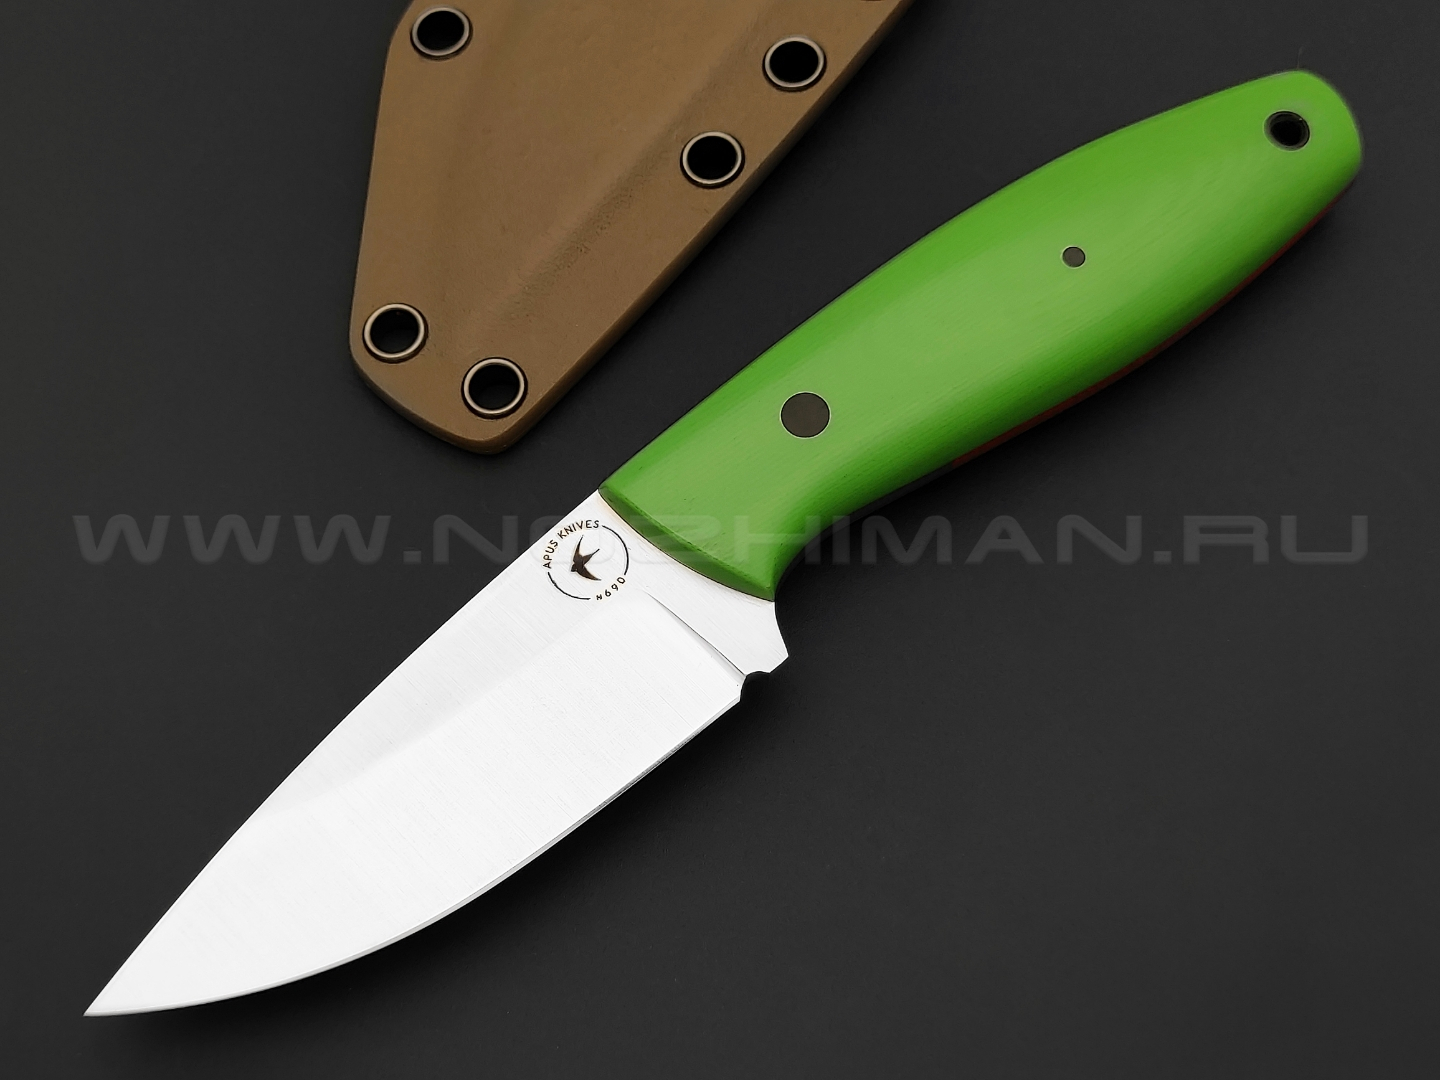 Apus Knives нож Shorty Mod. сталь N690, рукоять G10 green